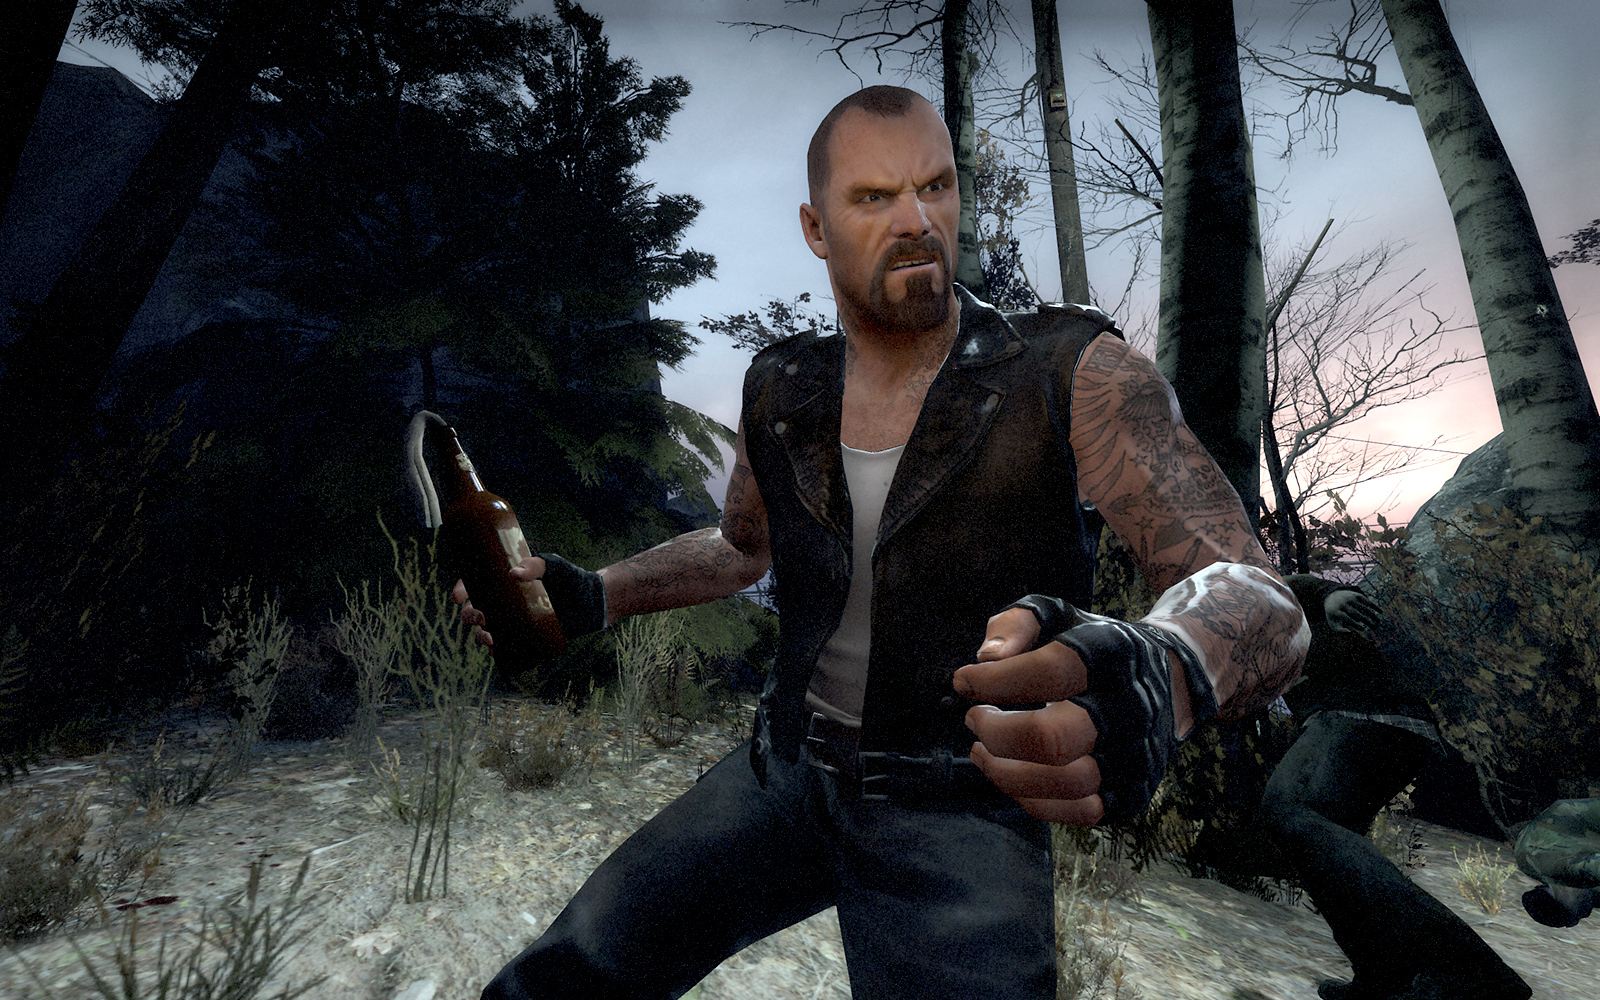 Dead Alliance vai trazer o espírito de L4D ao Xbox One e PC, ganha data e  preço - Windows Club